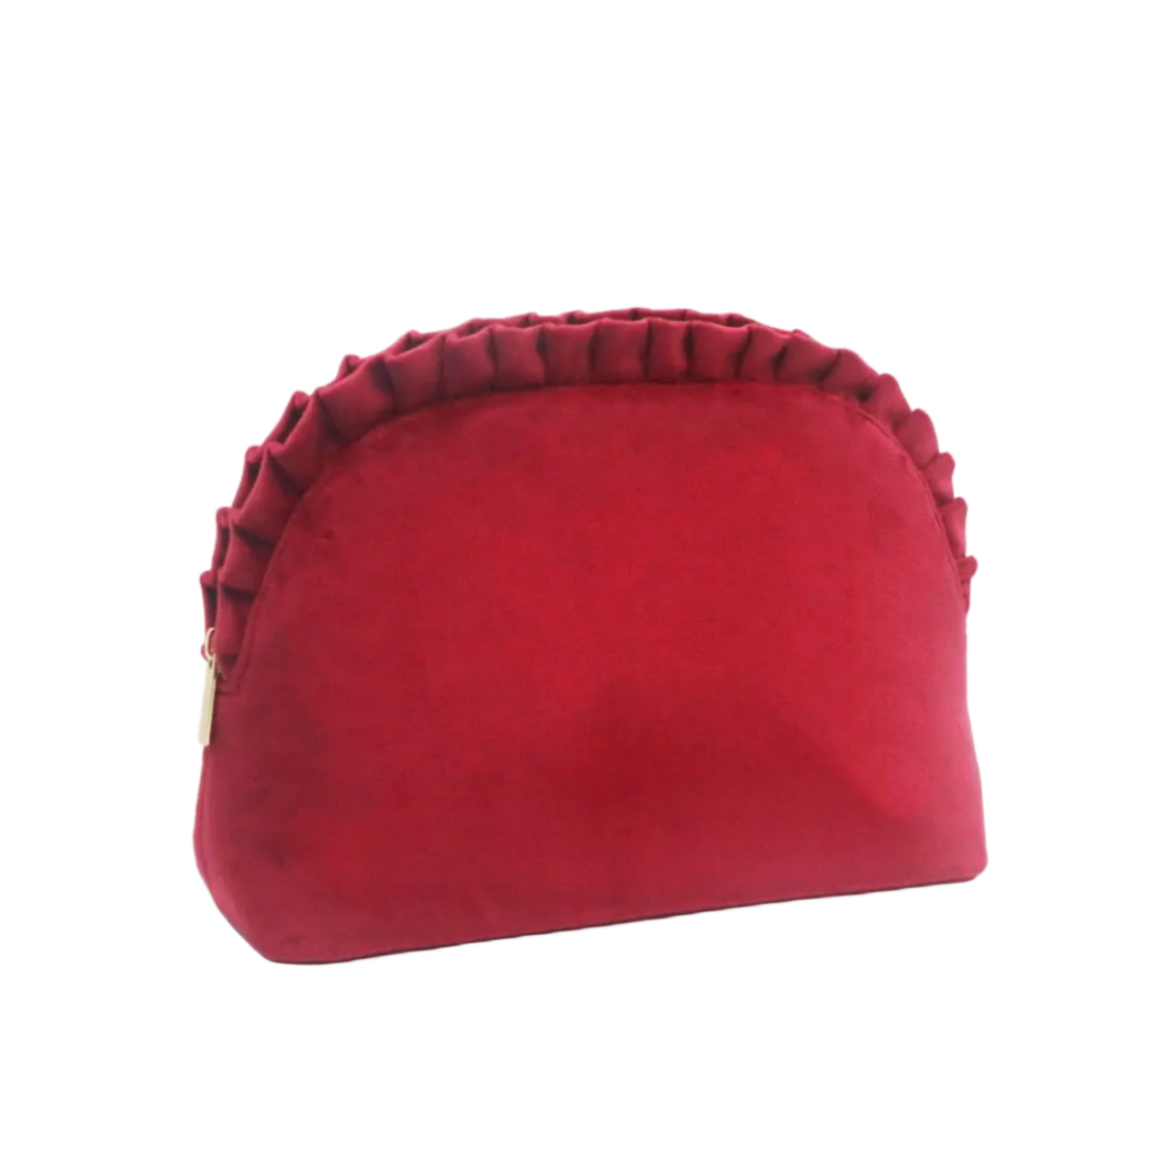 Burgundy Red Top Pleated Velvet Beauty Bag Polyester Velvet Women Makeup Pouch Cosmetic Bag